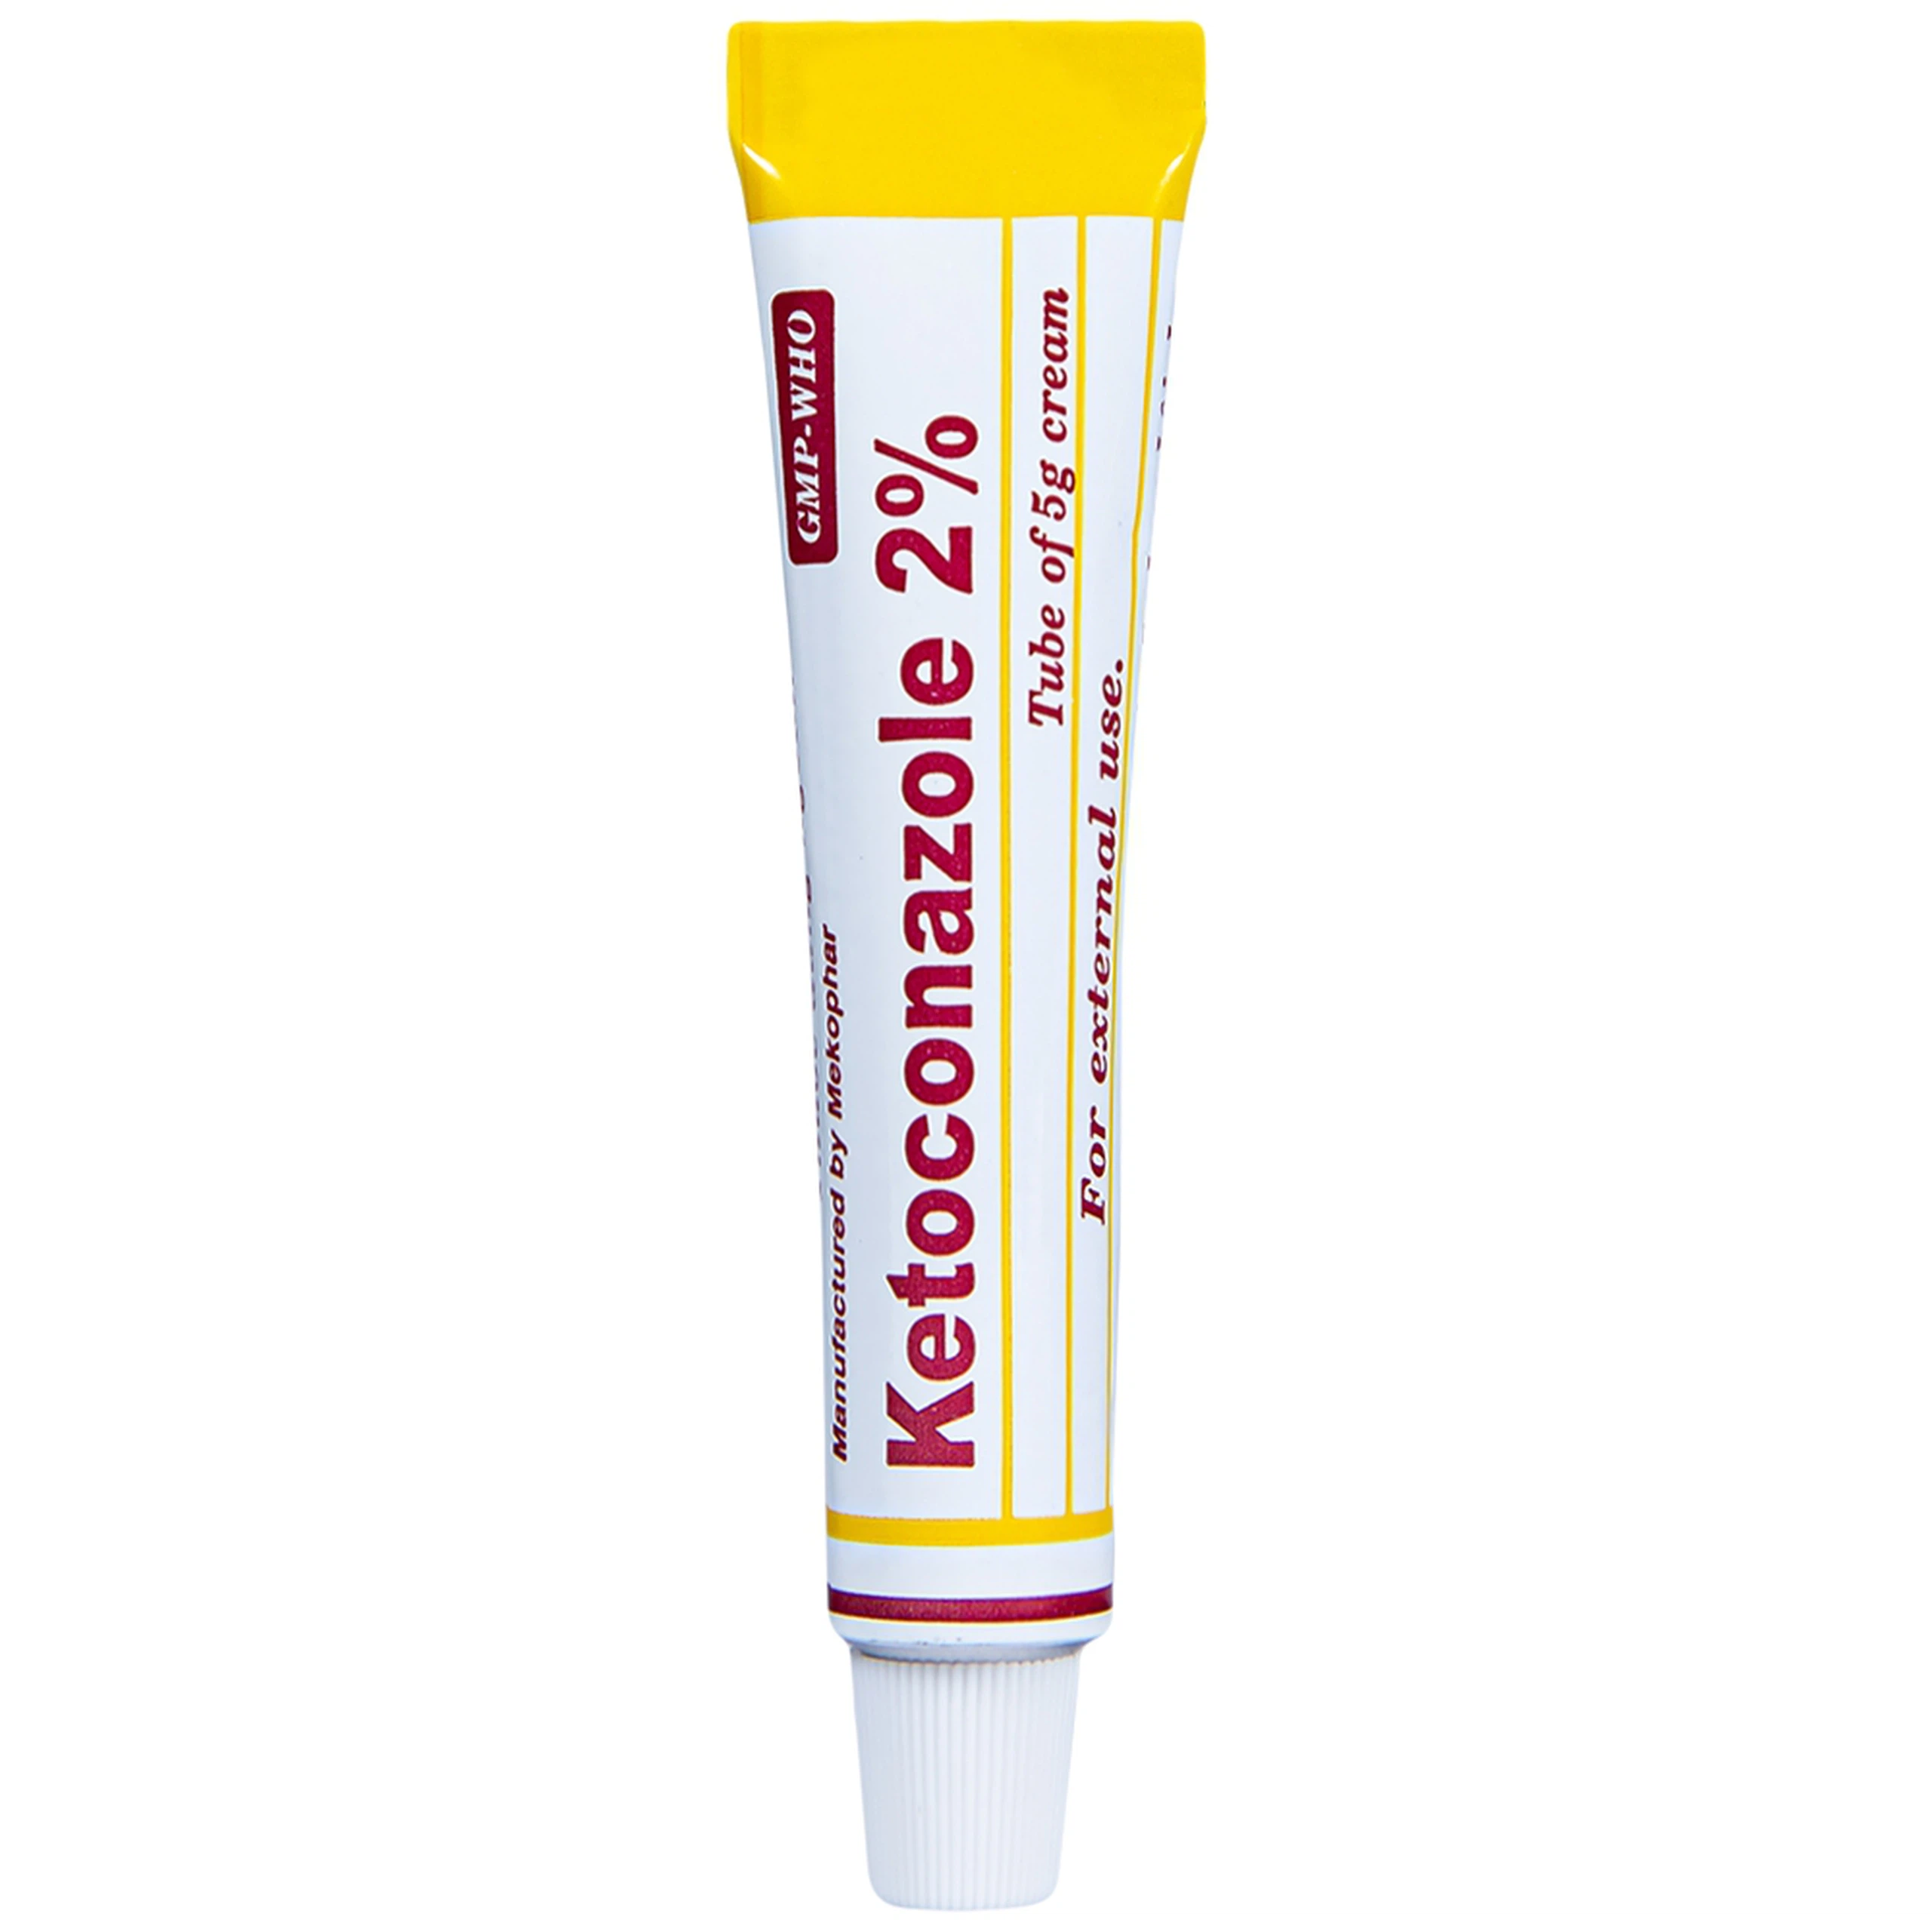 Kem bôi da Ketoconazole 2% Mekophar điều trị nấm ở da và niêm mạc (5g) 